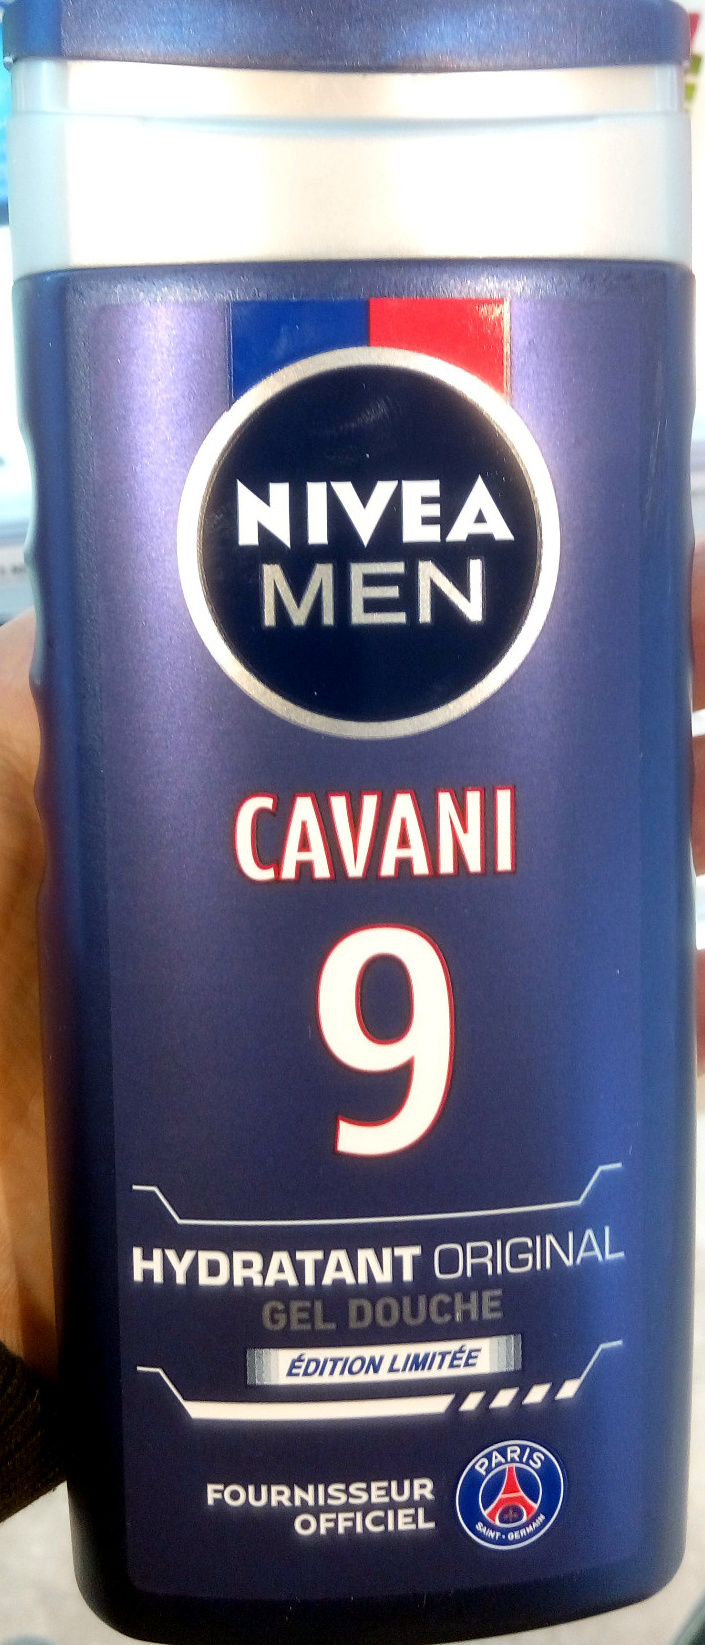 Cavani 9 - Gel douche hydratant originale édition limitée - Product - fr